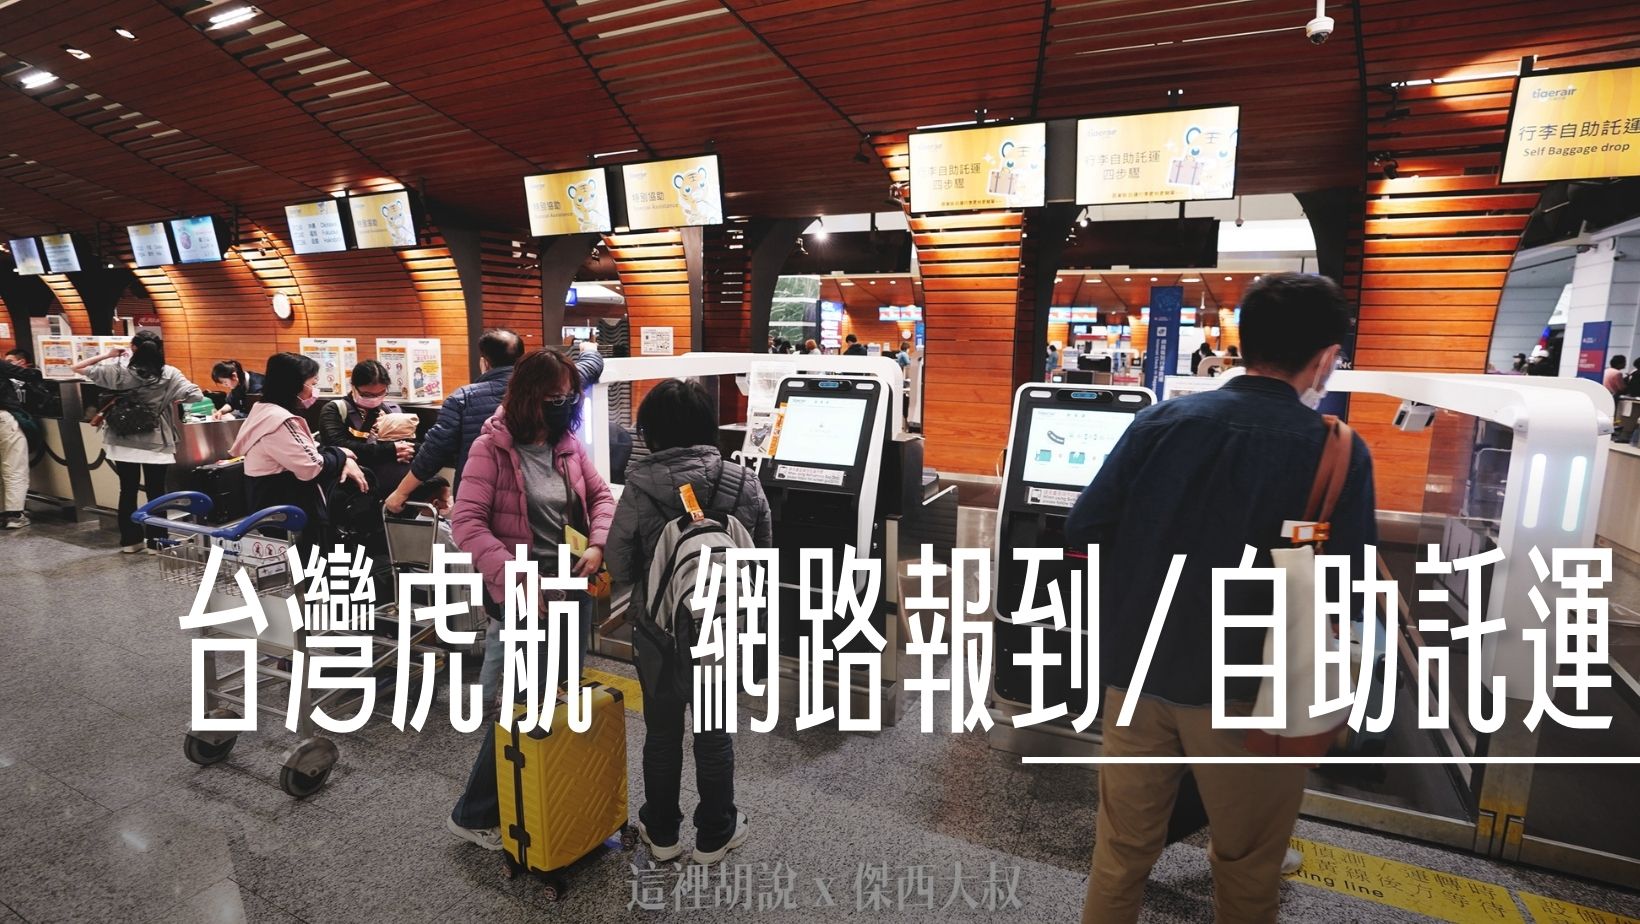 台灣虎航 桃園機場 預先網路報到 現場自助托運 大大節省時間